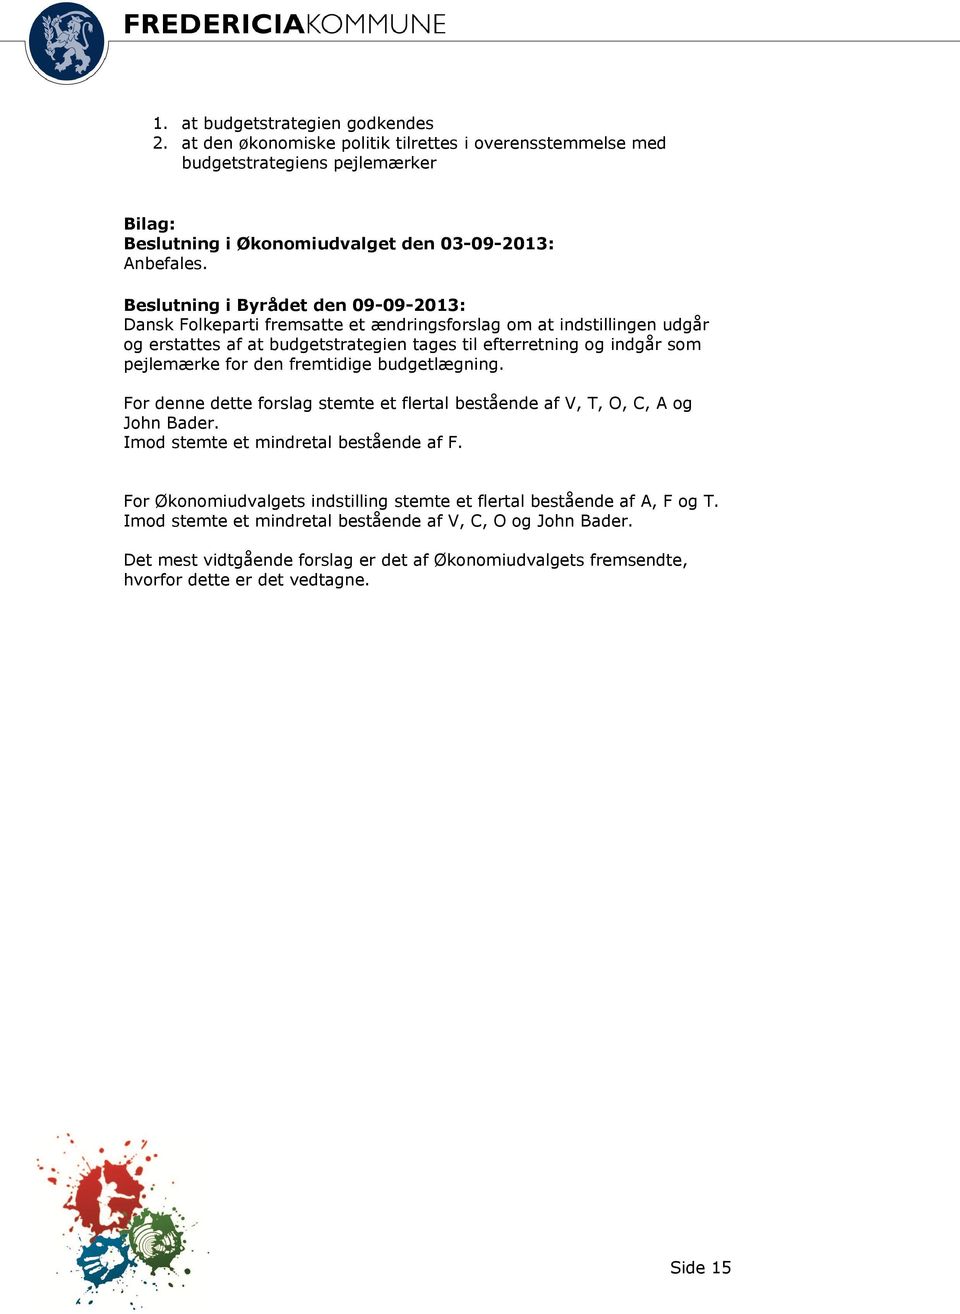 Beslutning i Byrådet den 09-09-2013: Dansk Folkeparti fremsatte et ændringsforslag om at indstillingen udgår og erstattes af at budgetstrategien tages til efterretning og indgår som pejlemærke for